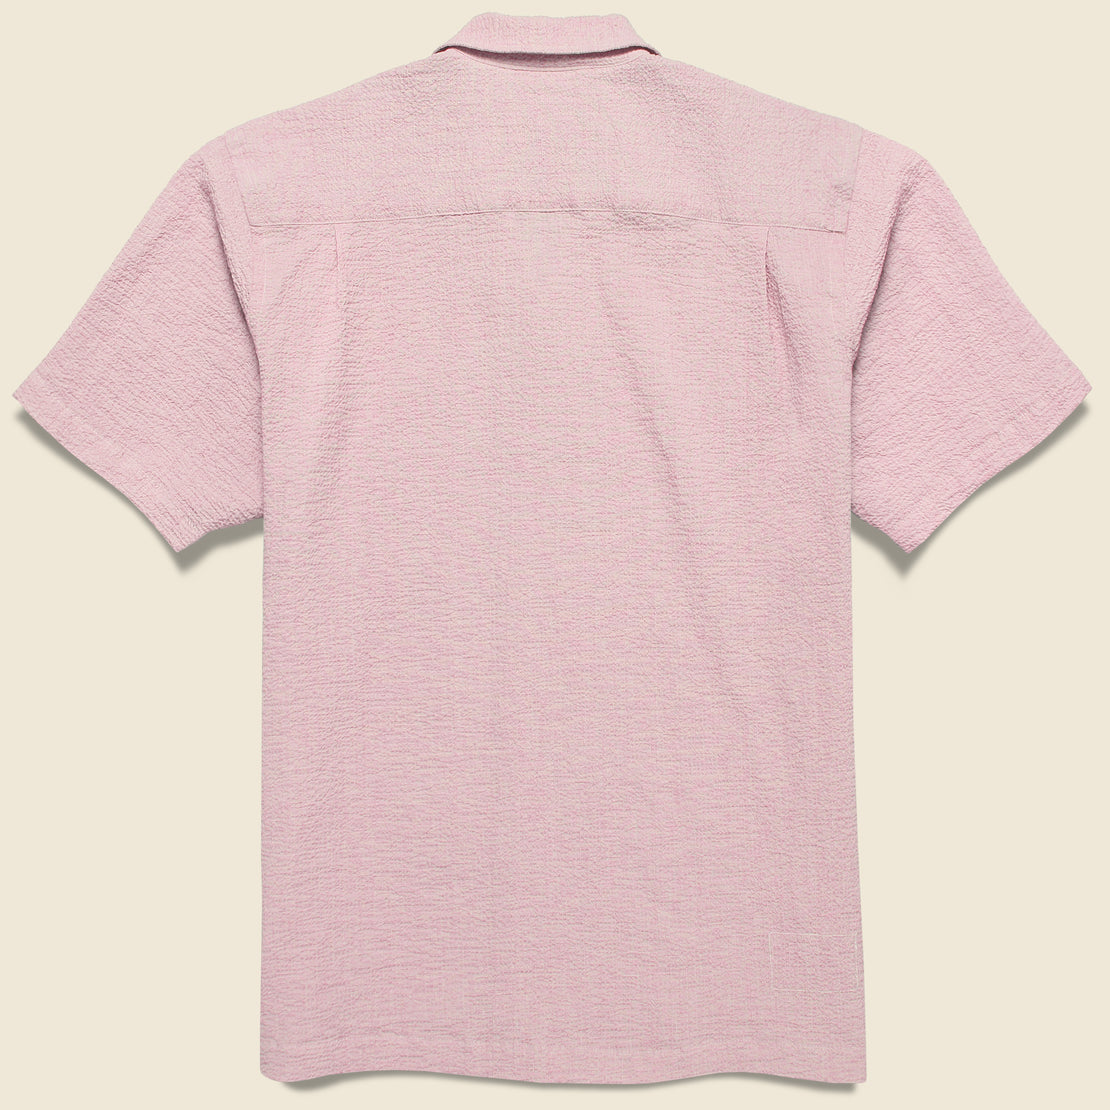 Seersucker Camp Shirt - Pink - Universal Works - STAG Provisions - Tops - S/S Woven - Seersucker